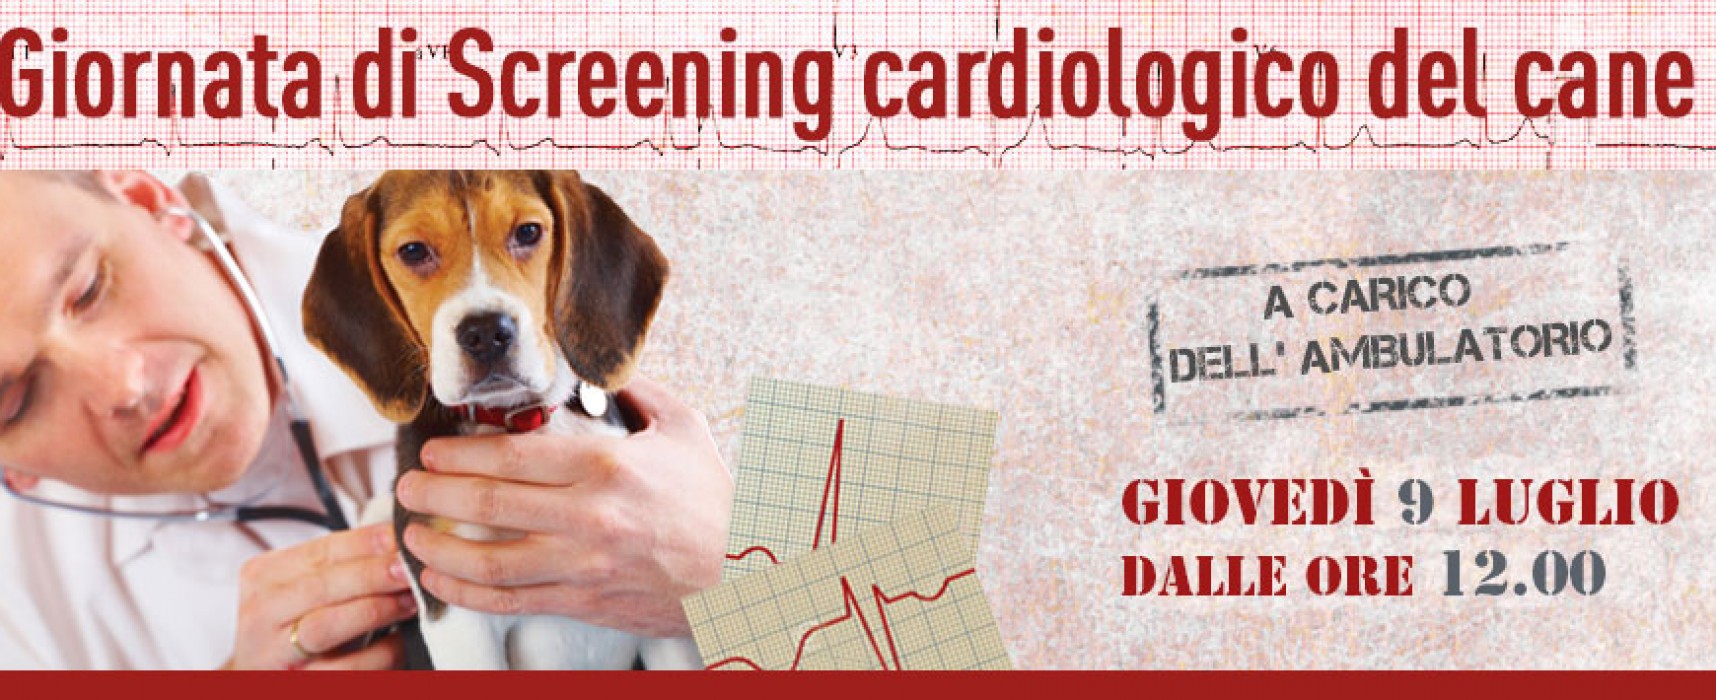 Screening cardiologico gratuito presso l’ambulatorio veterinario “Dott. Gennaro Papagni”